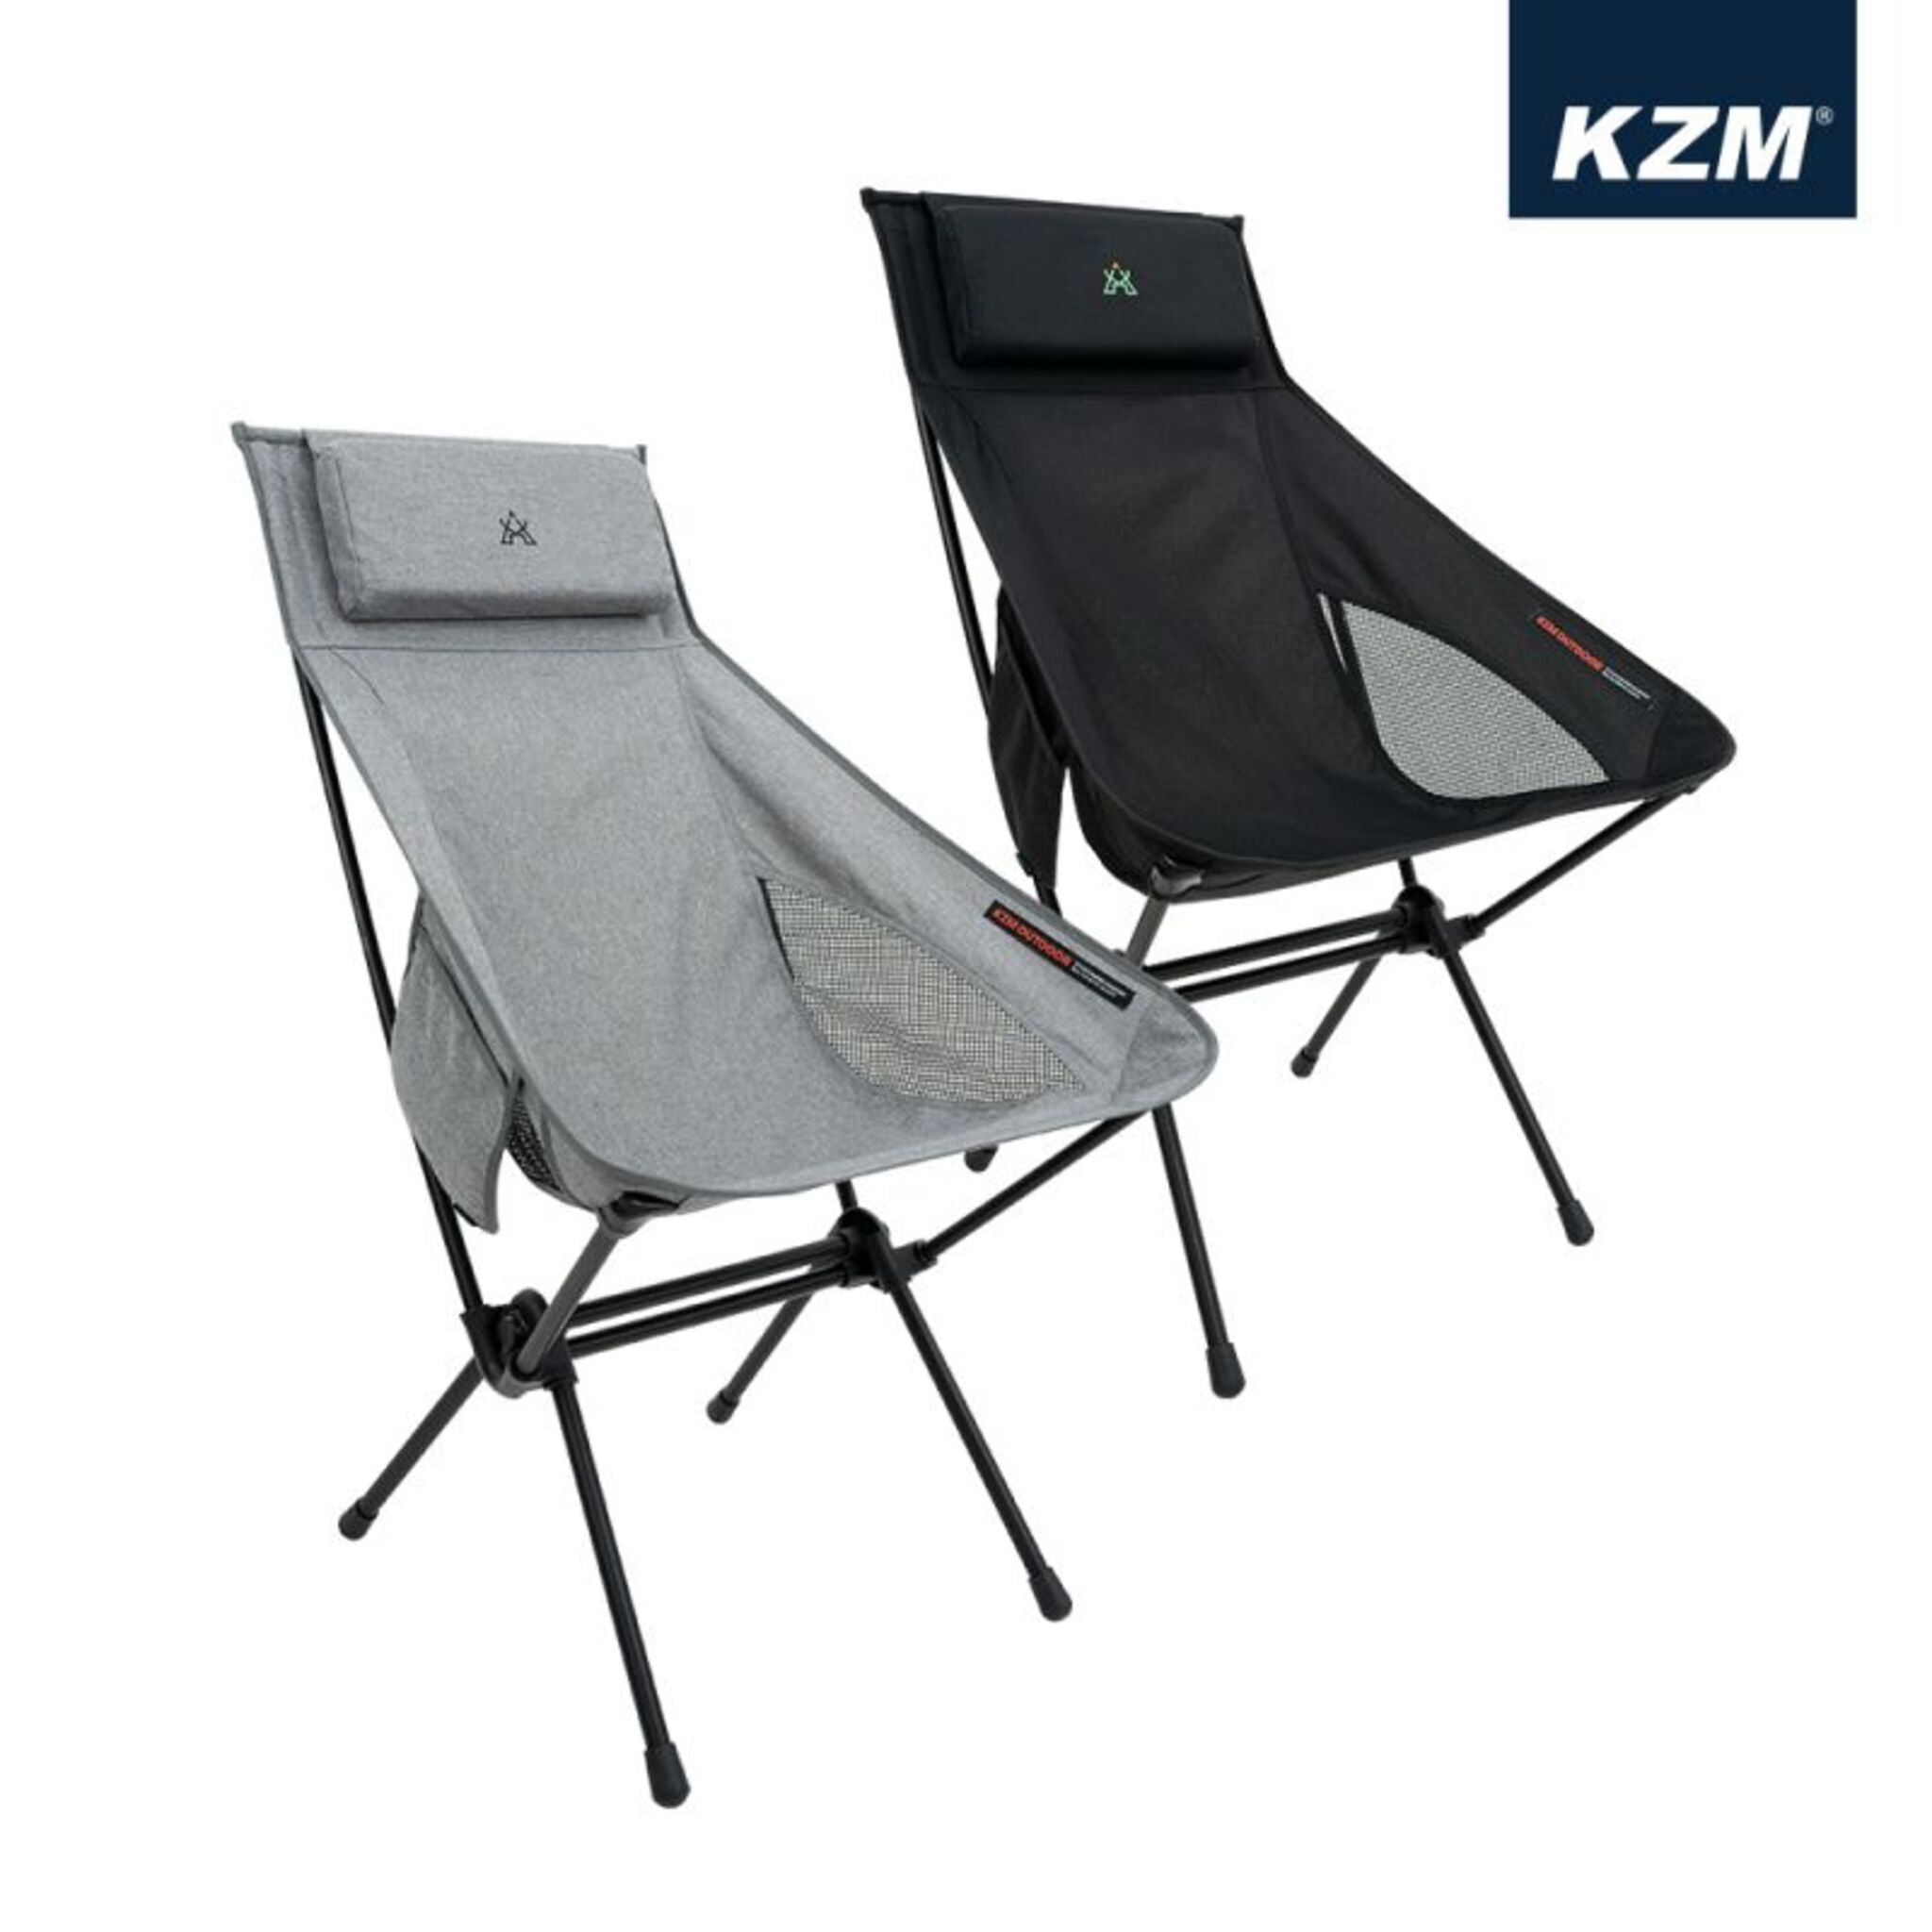 KAZMI KZM 高背輕量椅 K21T1C02